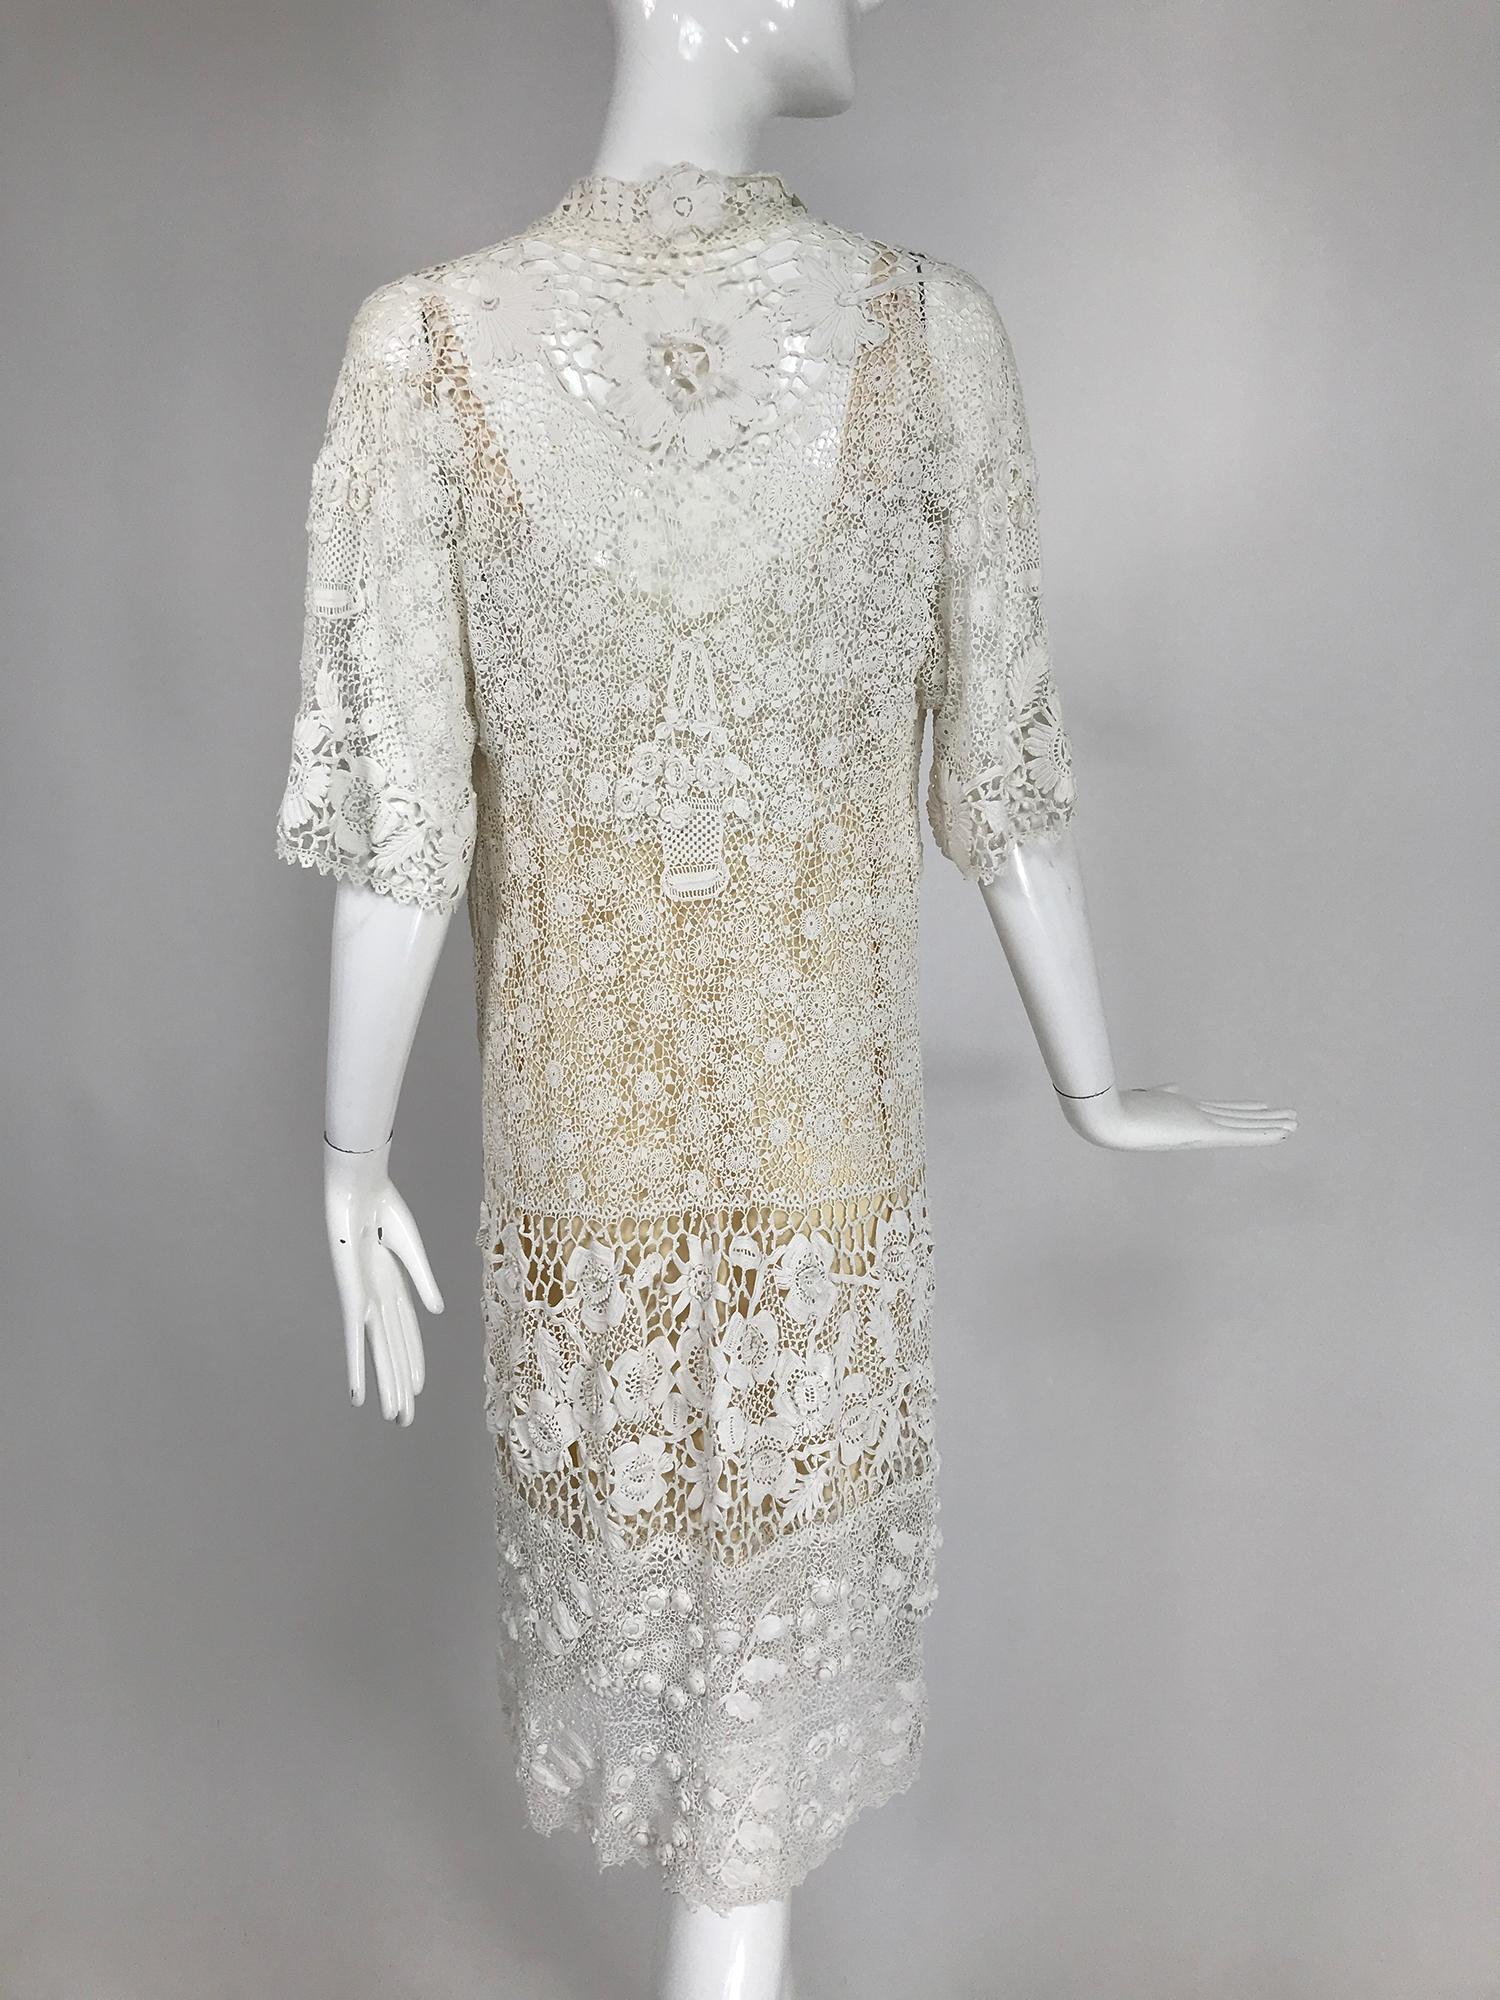 irish lace wedding dress